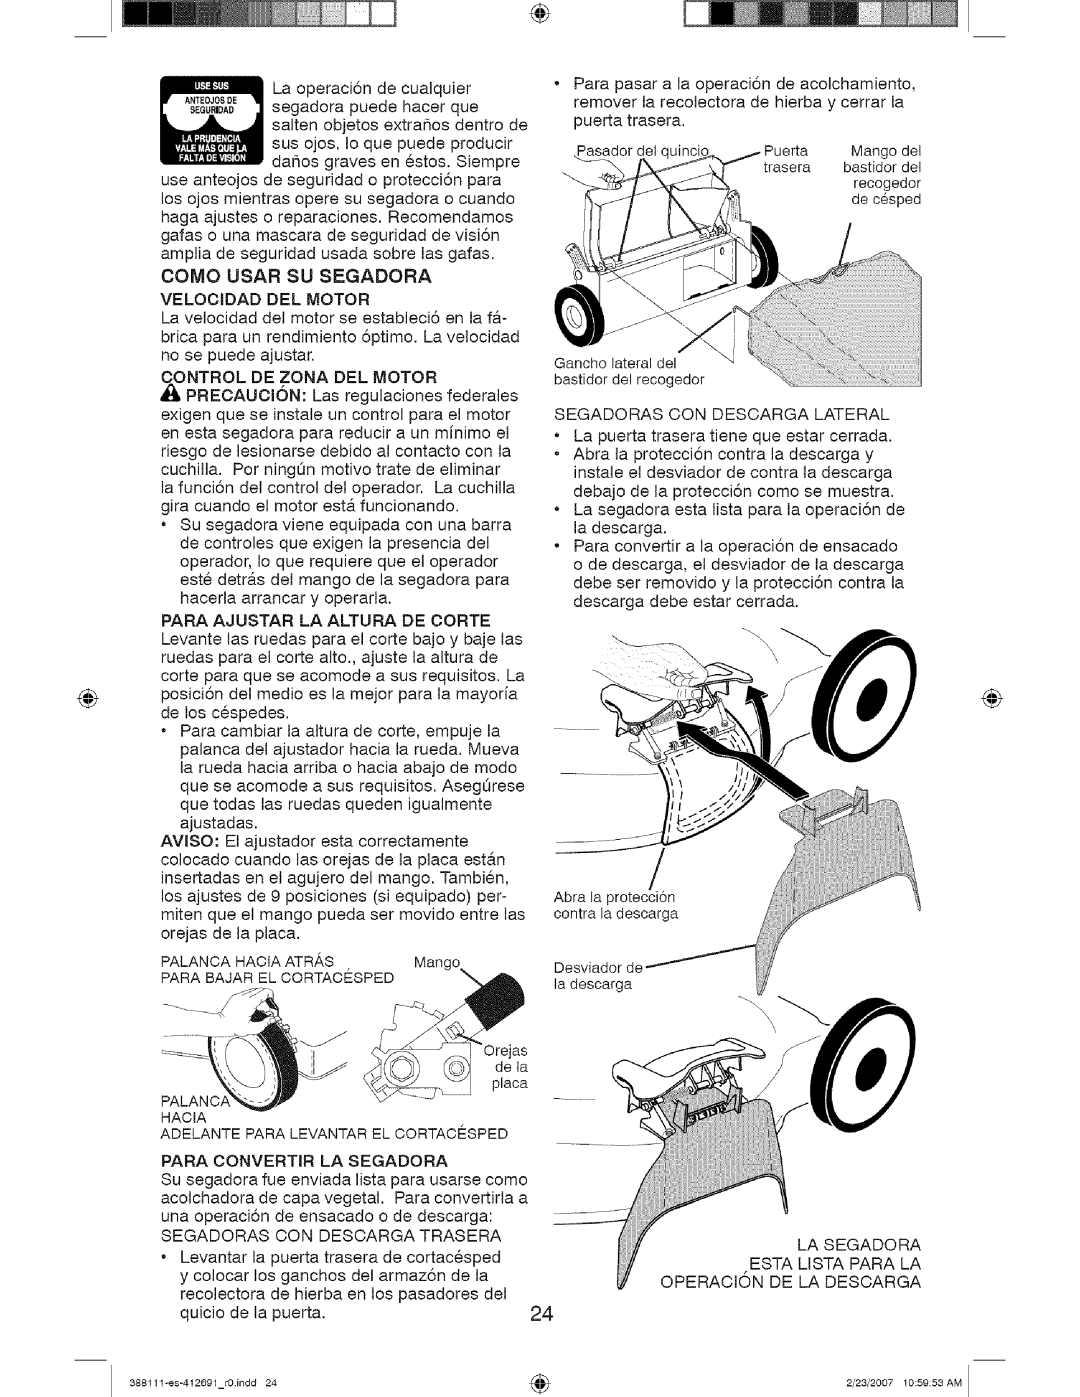 Craftsman 917 388111 owner manual Como Usar Su Segadora Velocidad Del Motor 